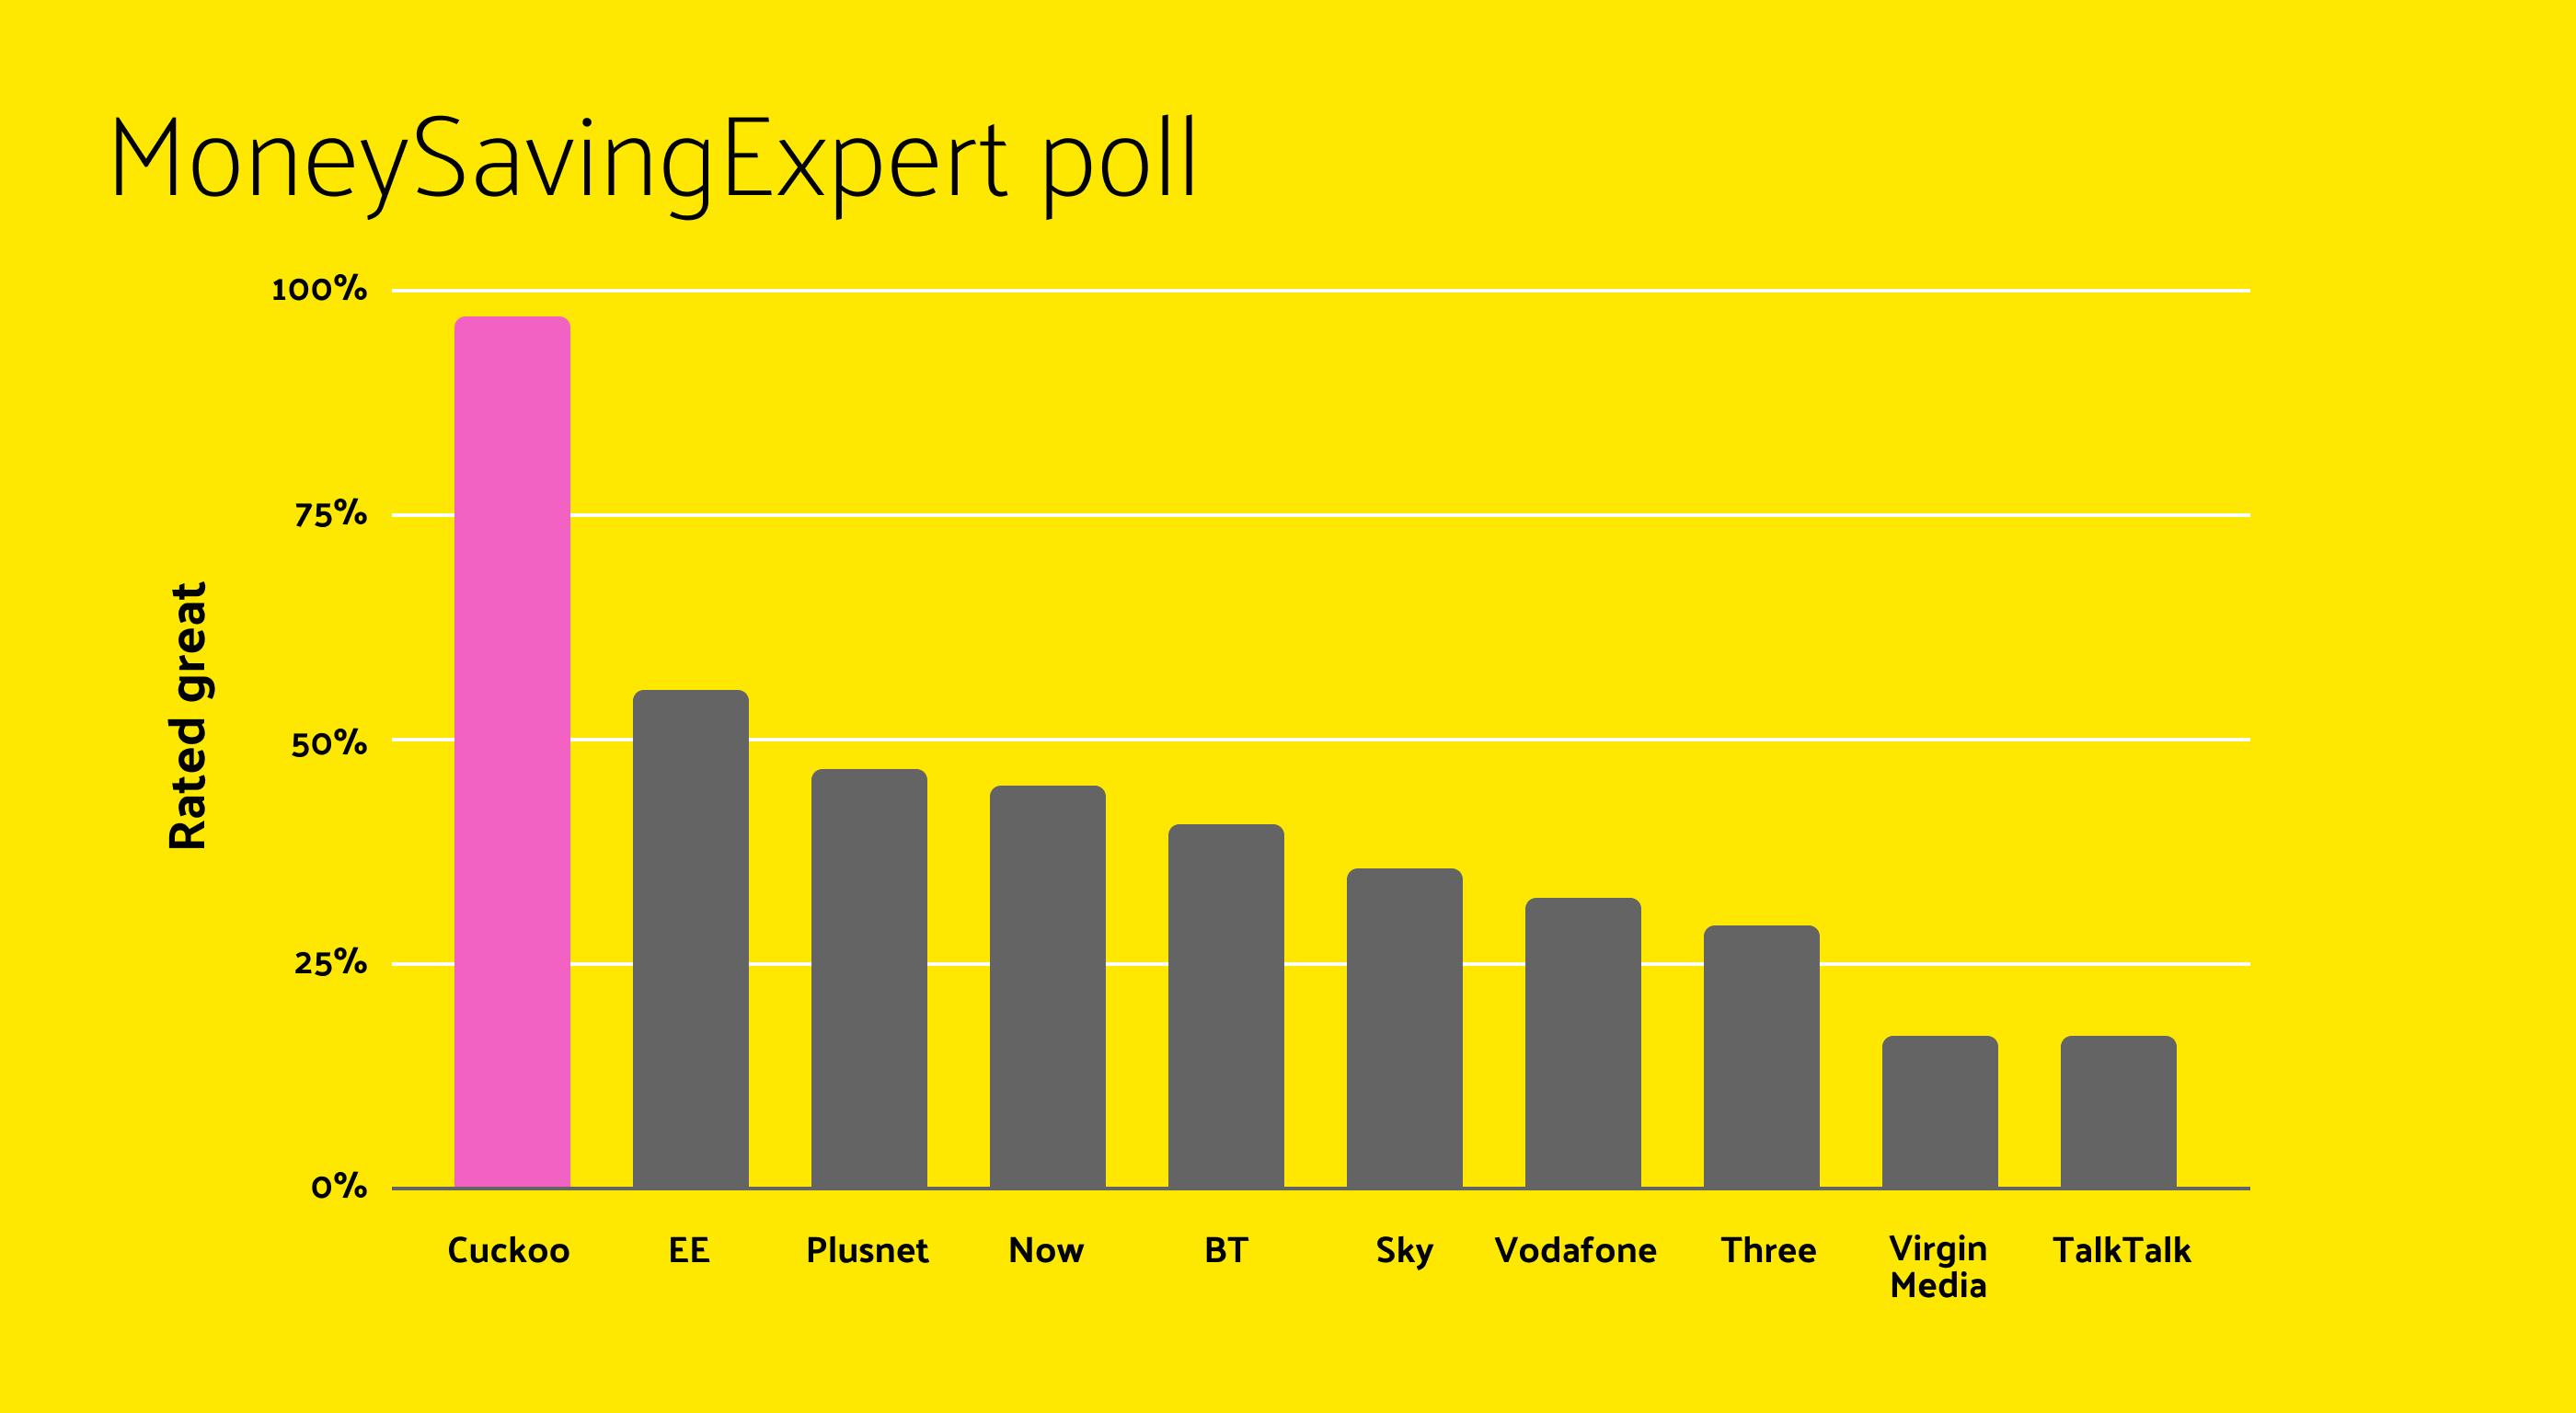 MoneySavingExpert poll